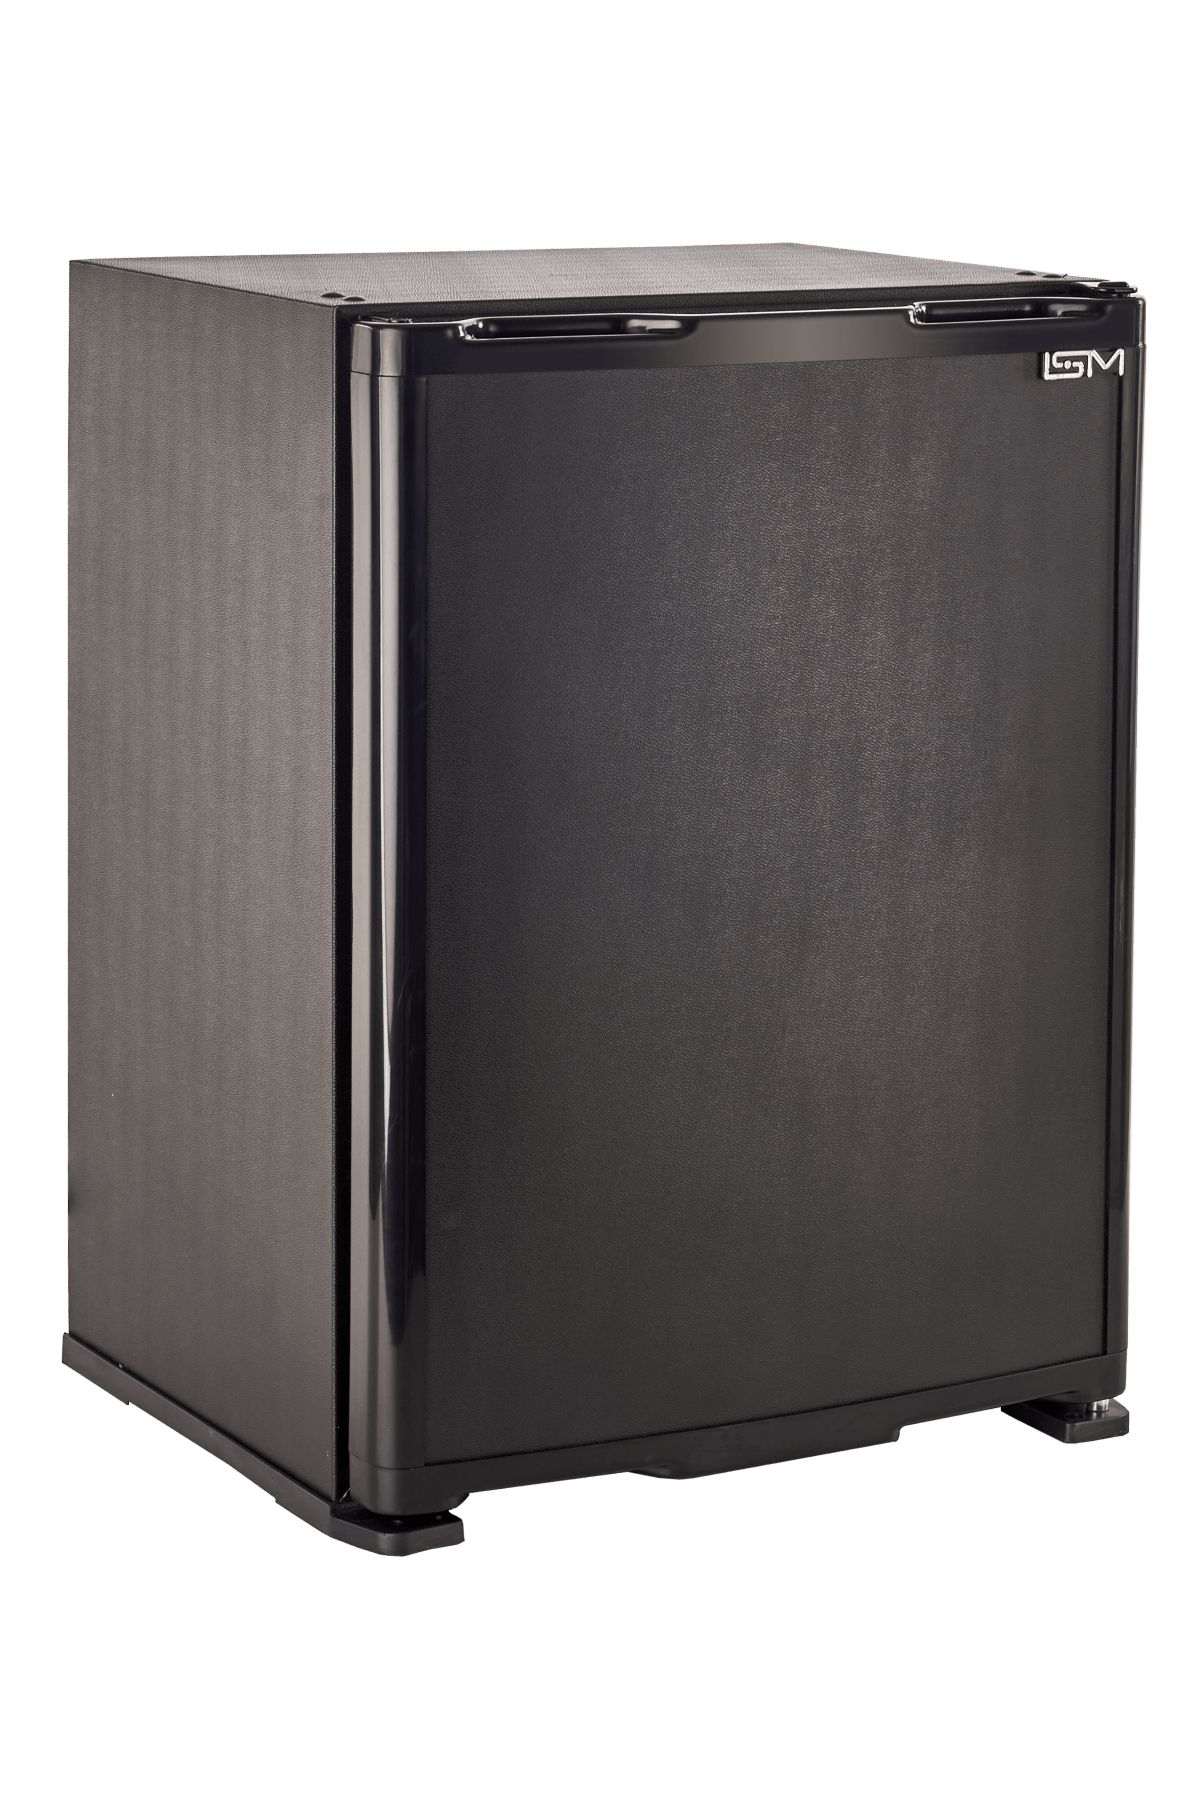 ISM Siyah Blok Kapı 27 Litre Minibar Mini Buzdolabı Sm-27